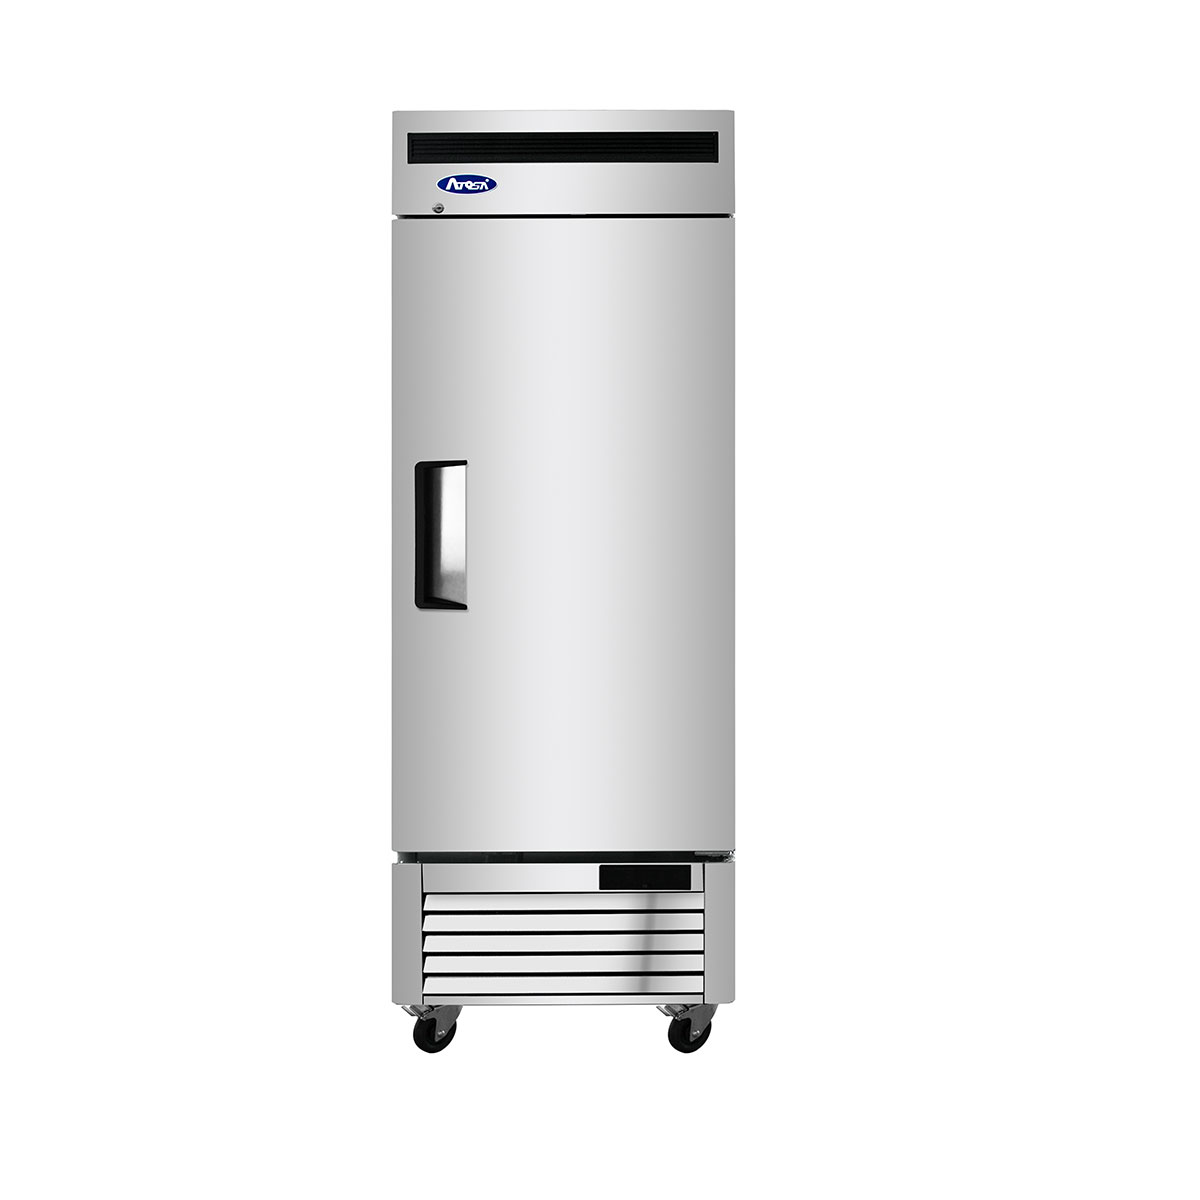 MBF8505GR – Bottom Mount (1) One Door Refrigerator